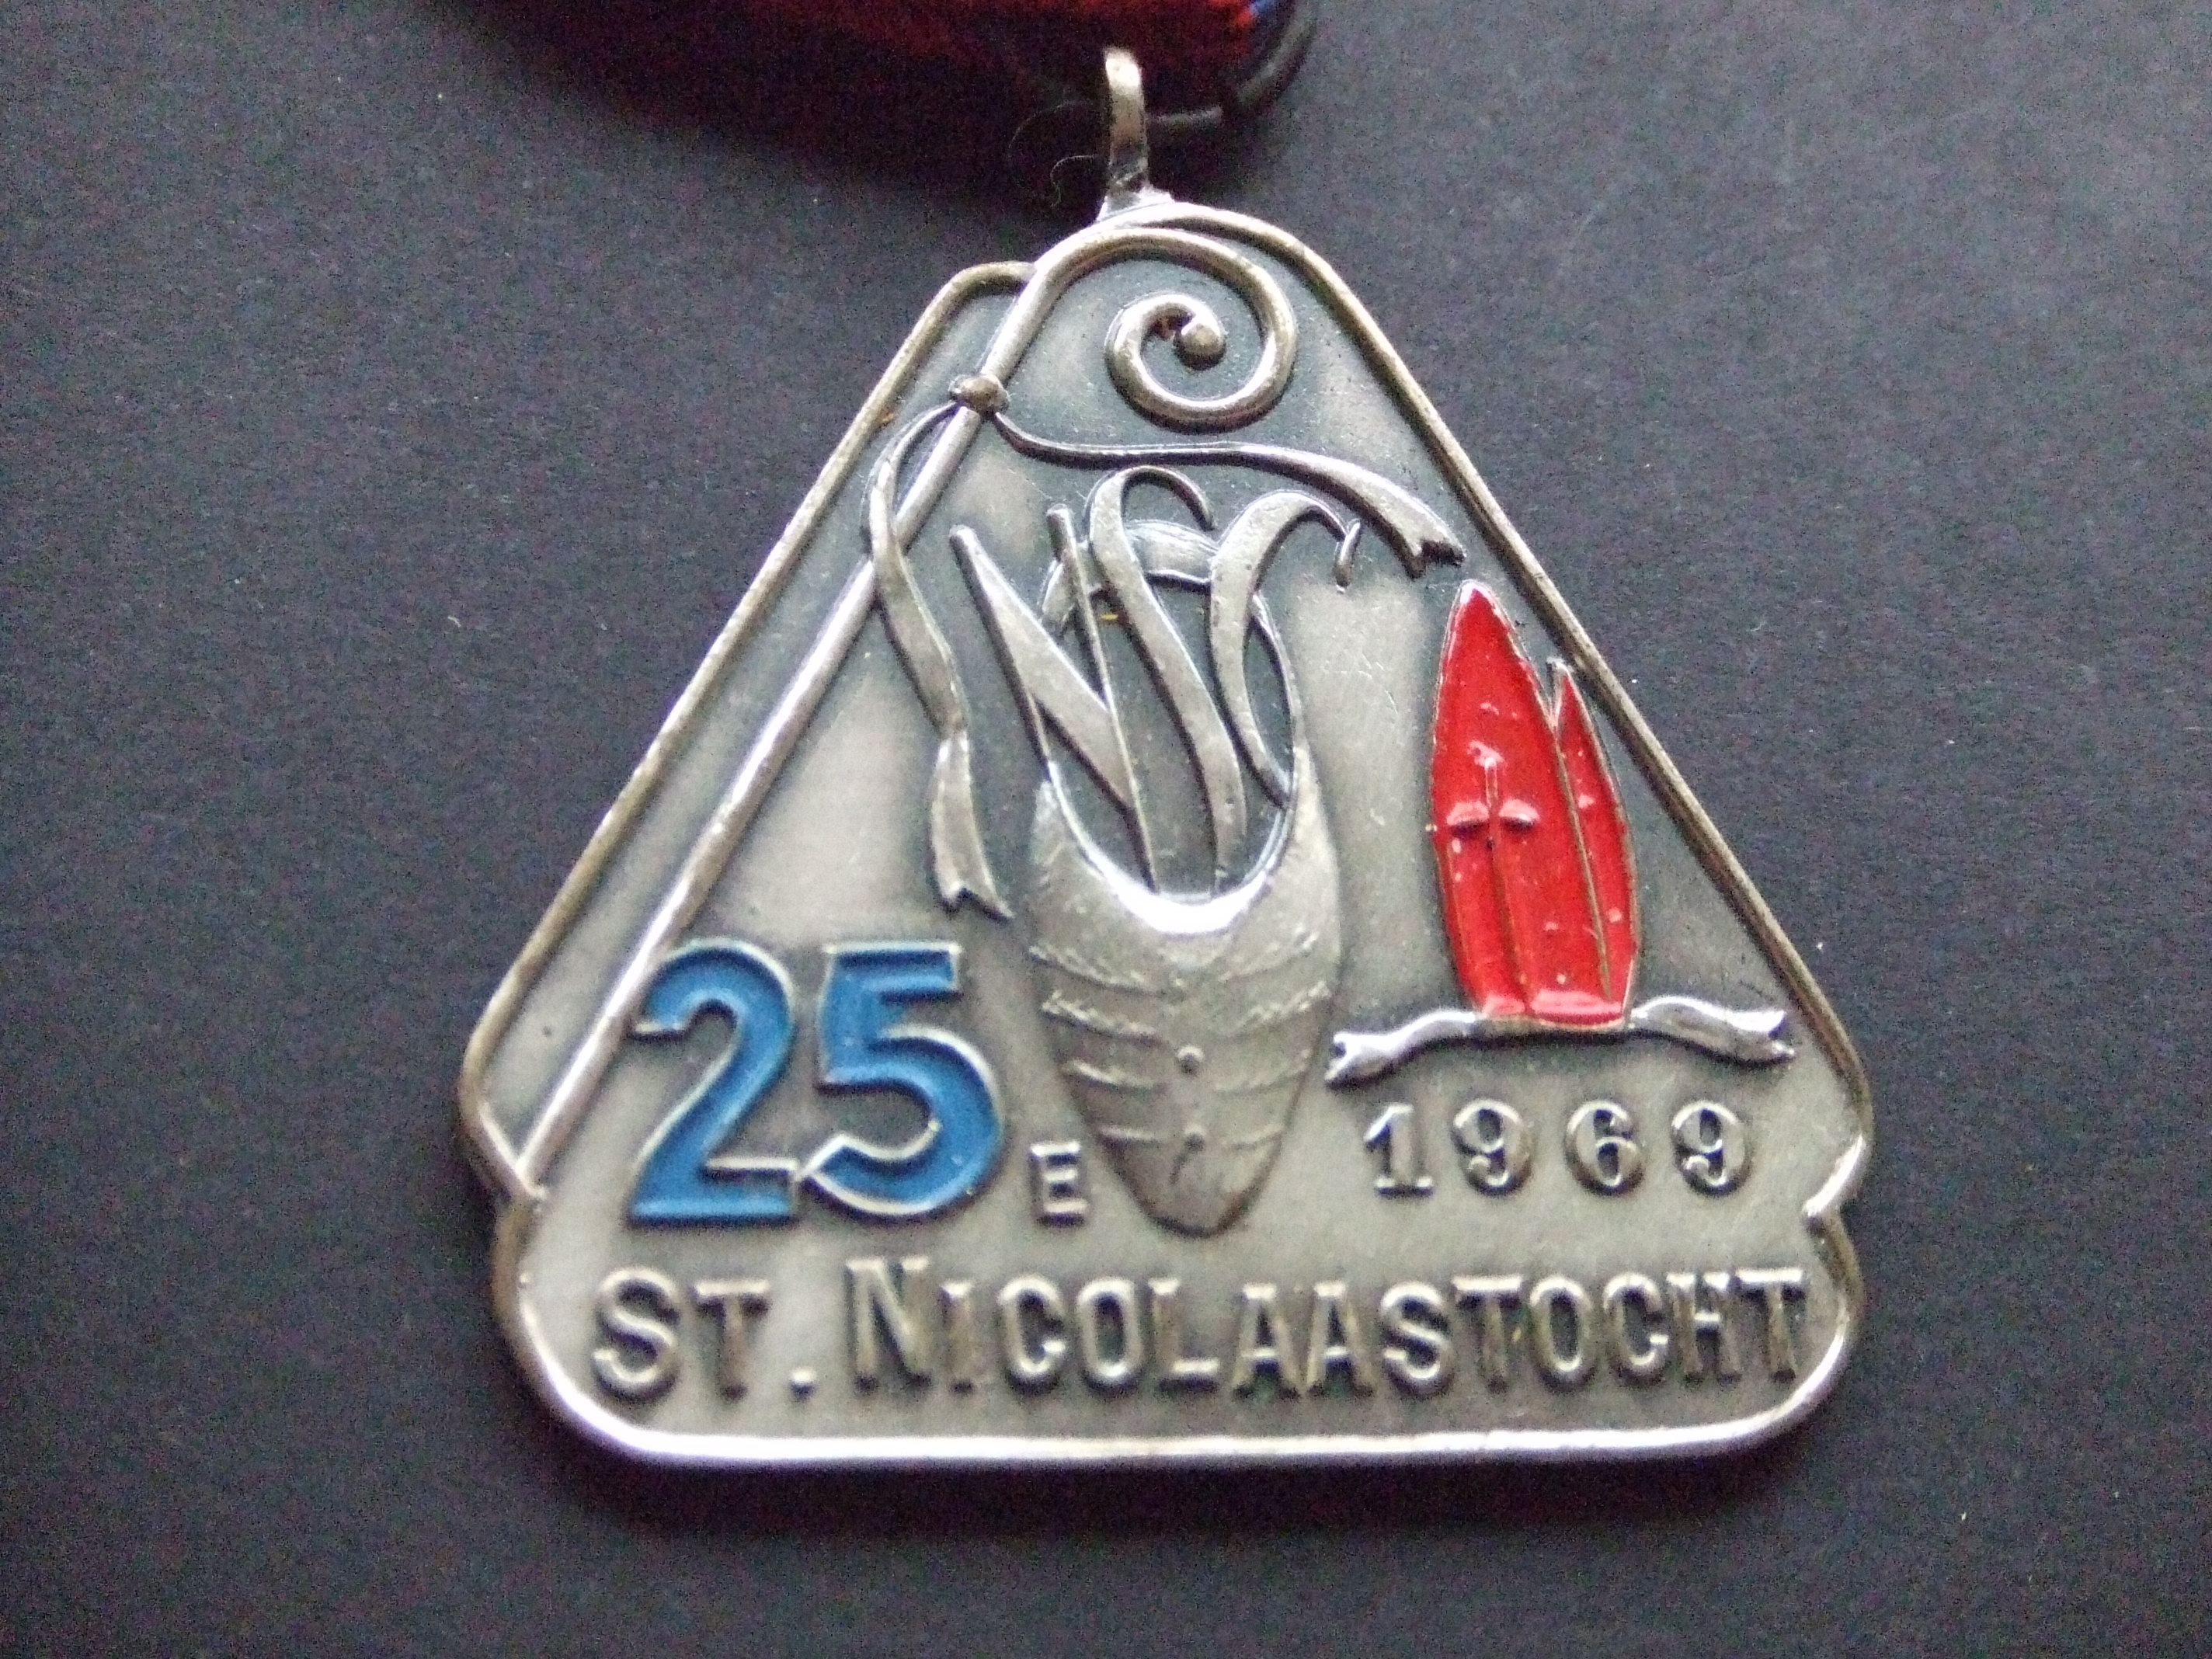 Sint Nicolaastocht jubileum 25e maal mijter klomp 1969